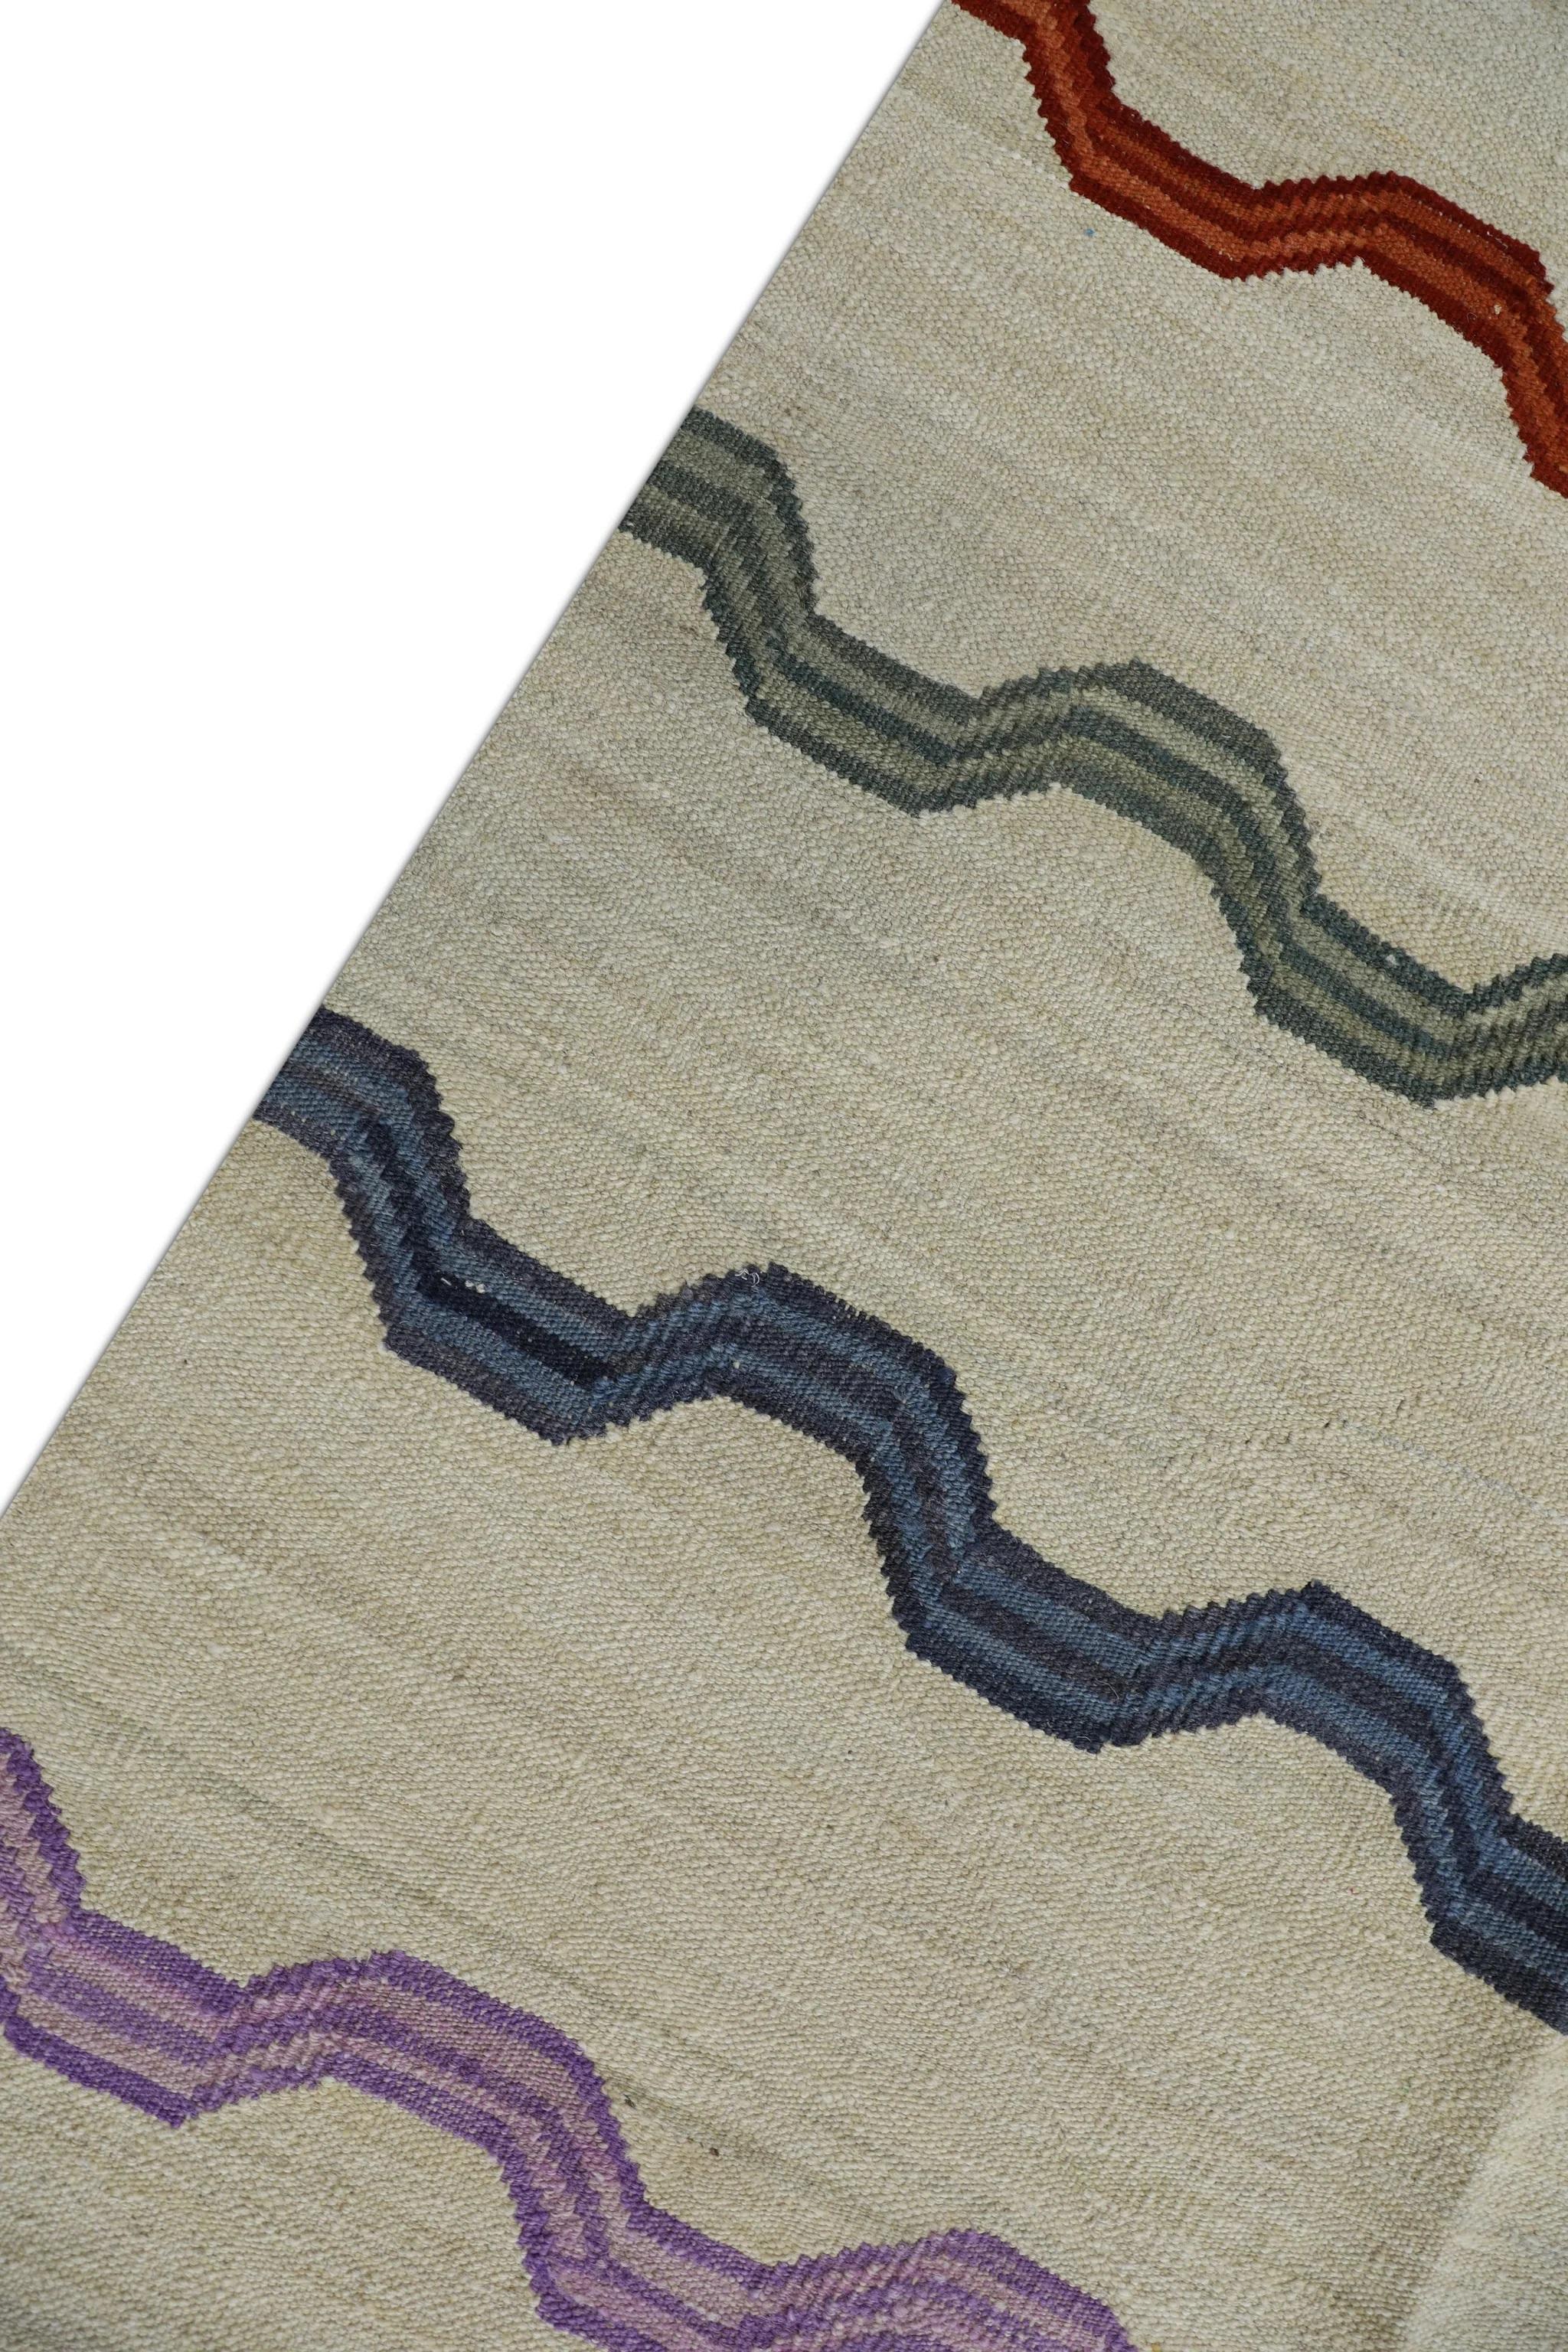 Modern Beige Flatweave Handmade Wool Rug in Multicolor Striped Pattern 8'1